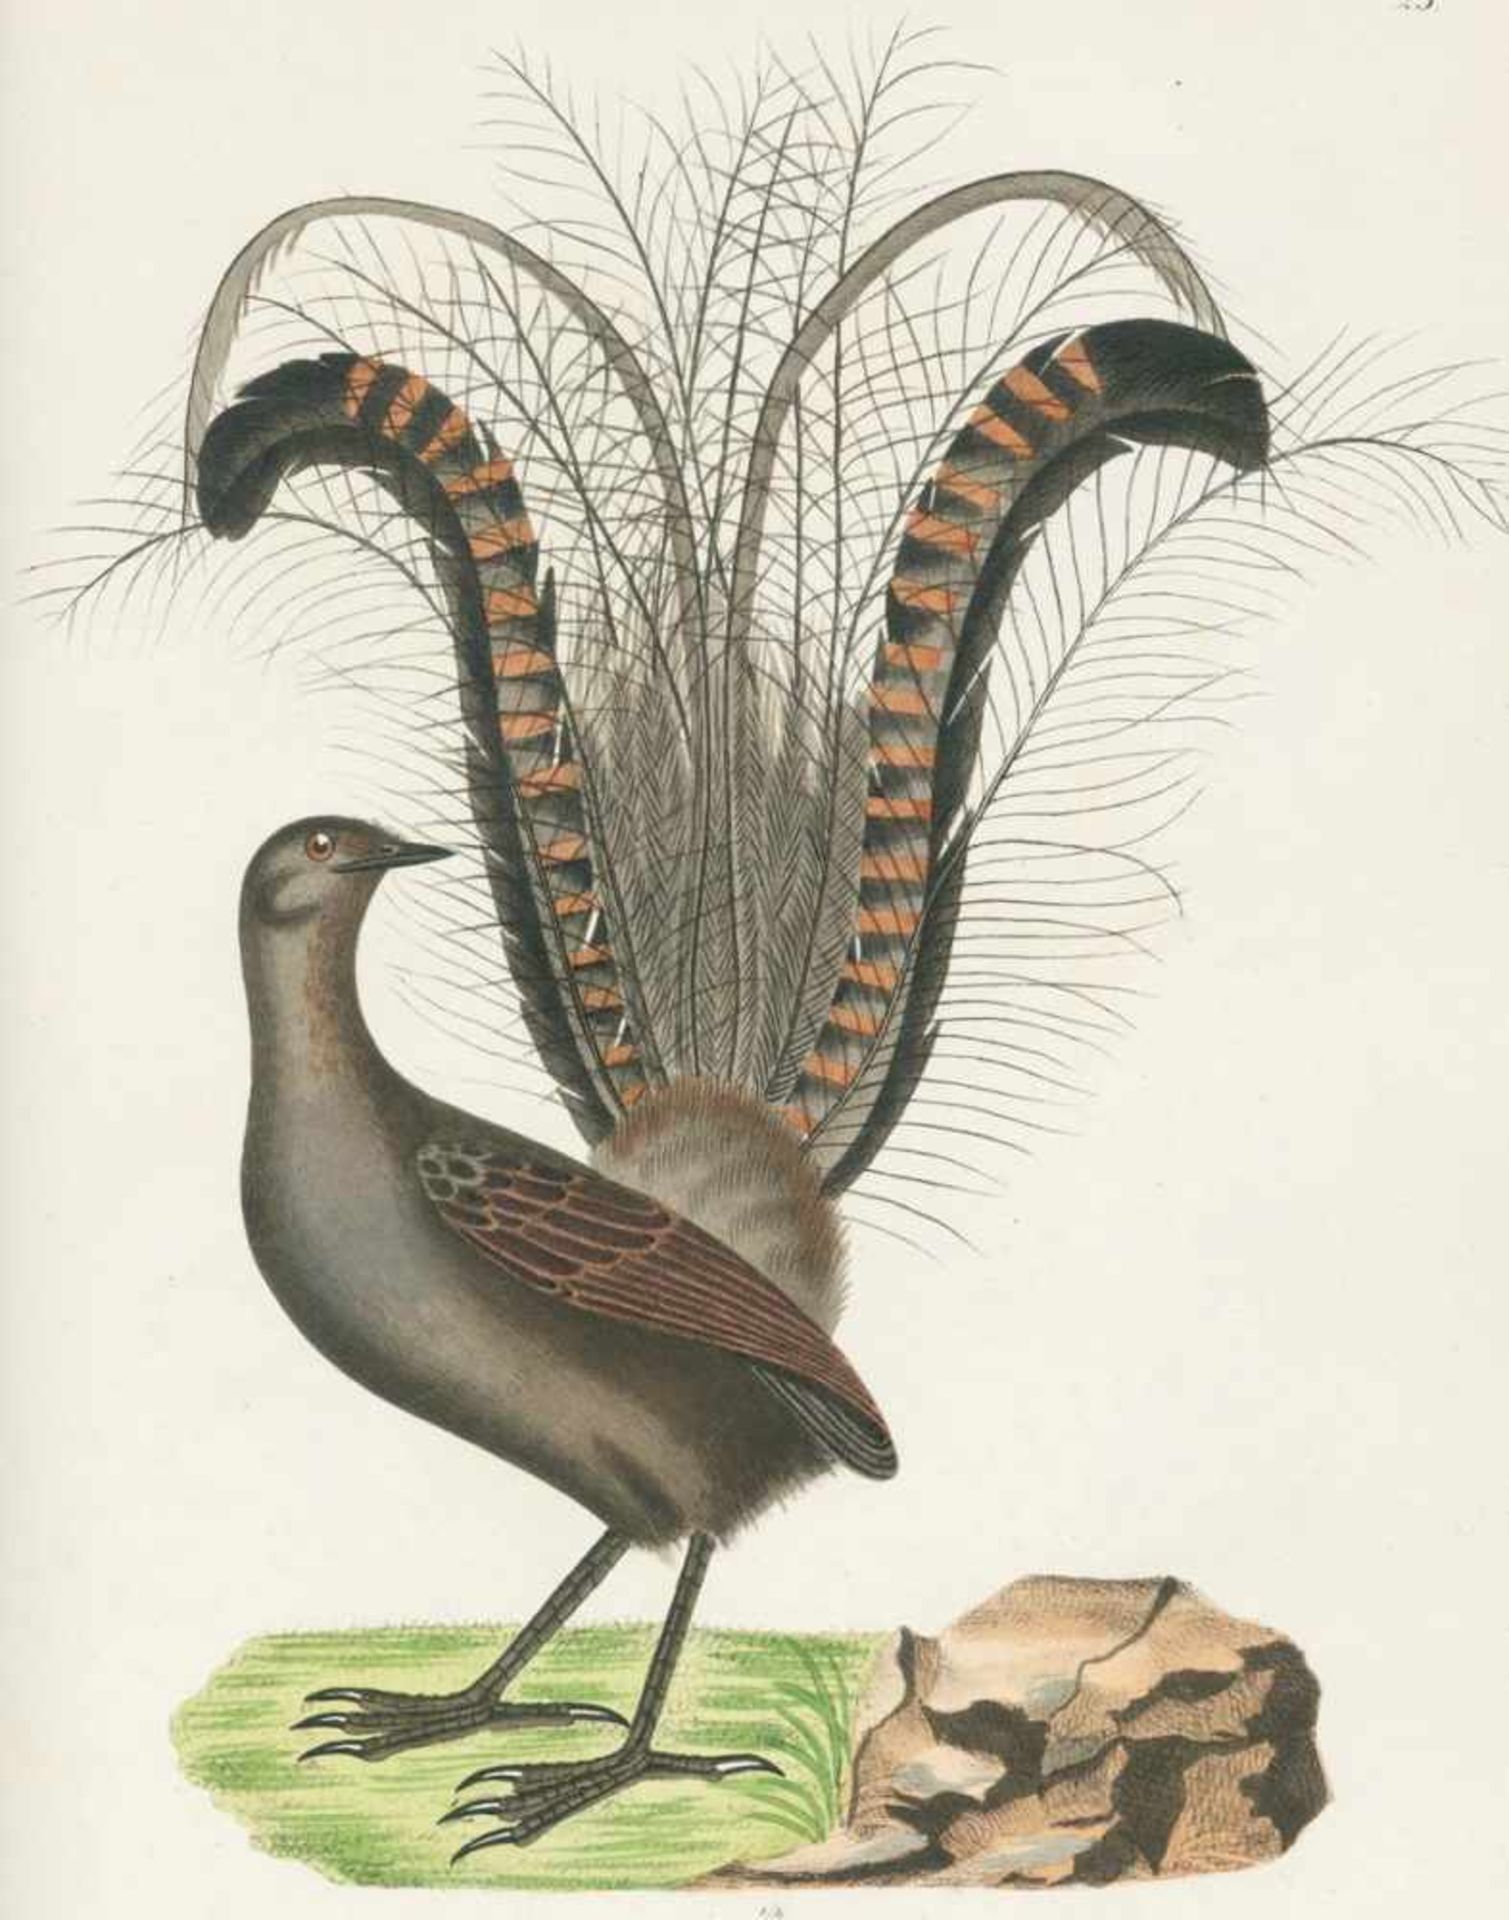 Schinz,H.R.Naturgeschichte der Vögel. 2. umgearb. Aufl. Zürich, Hanke 1854. Gr.4°. Mit 126 (davon